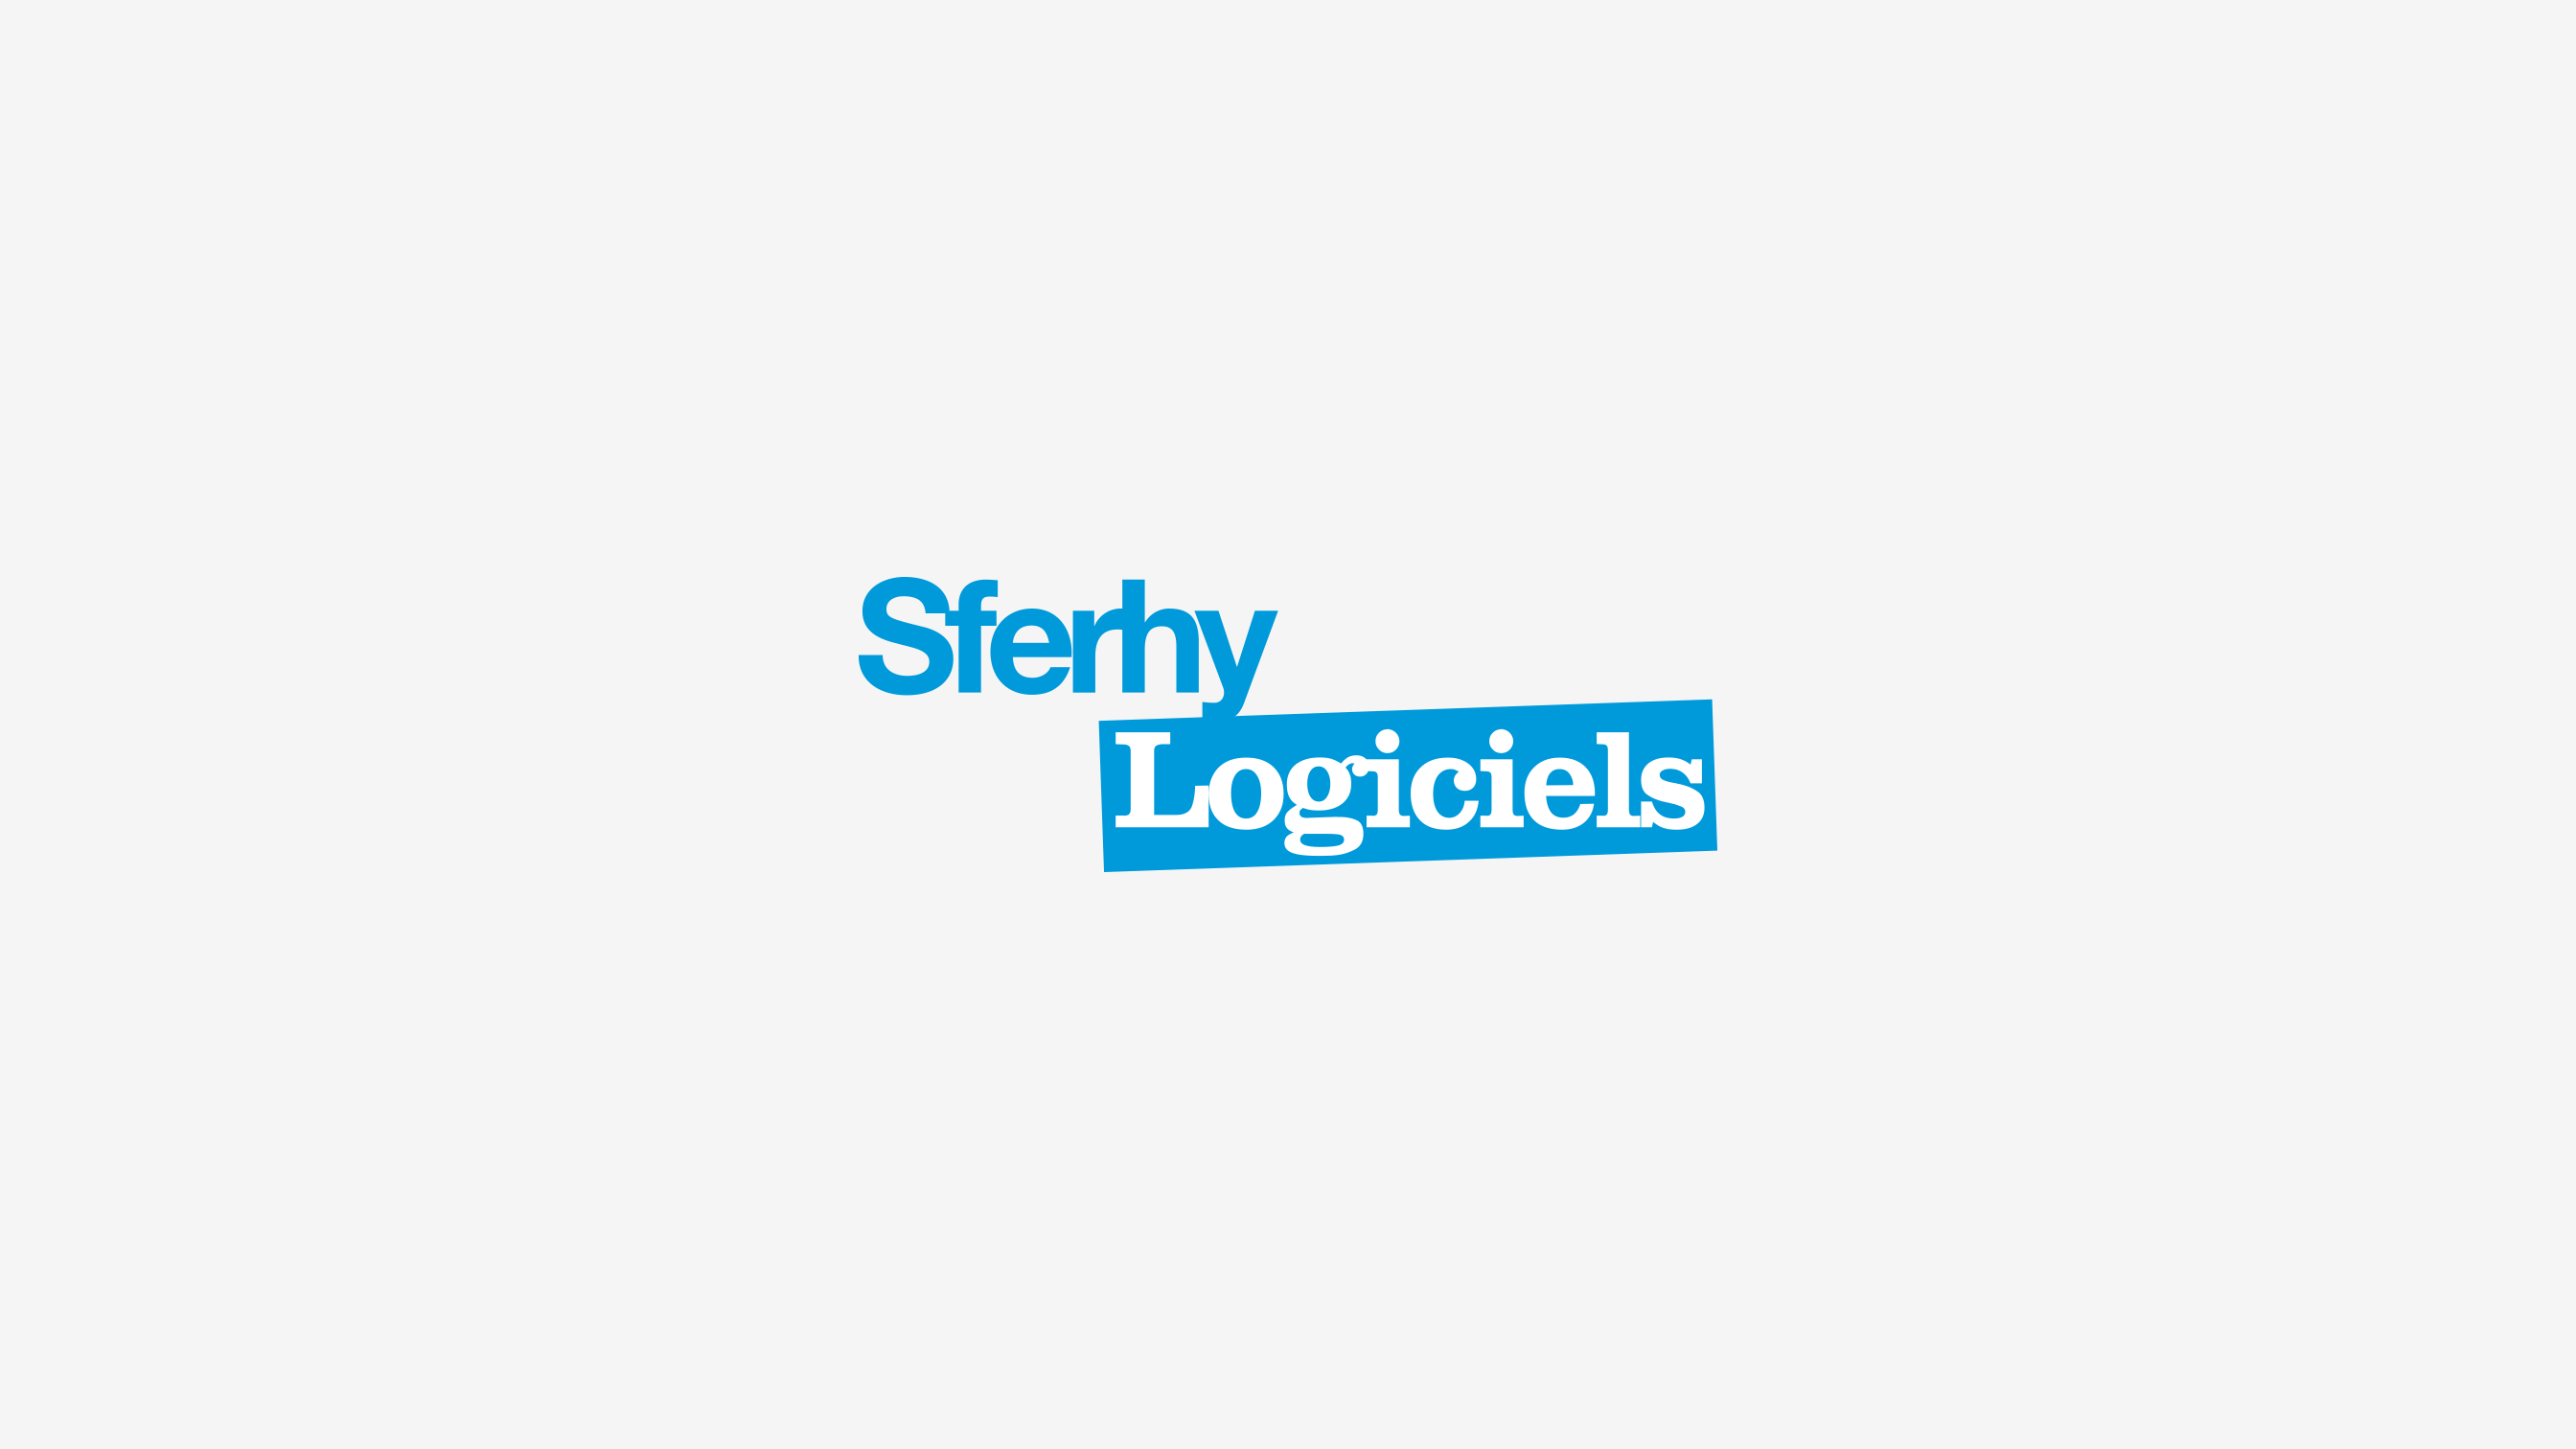 sferhy-logiciels-logotype-pikteo